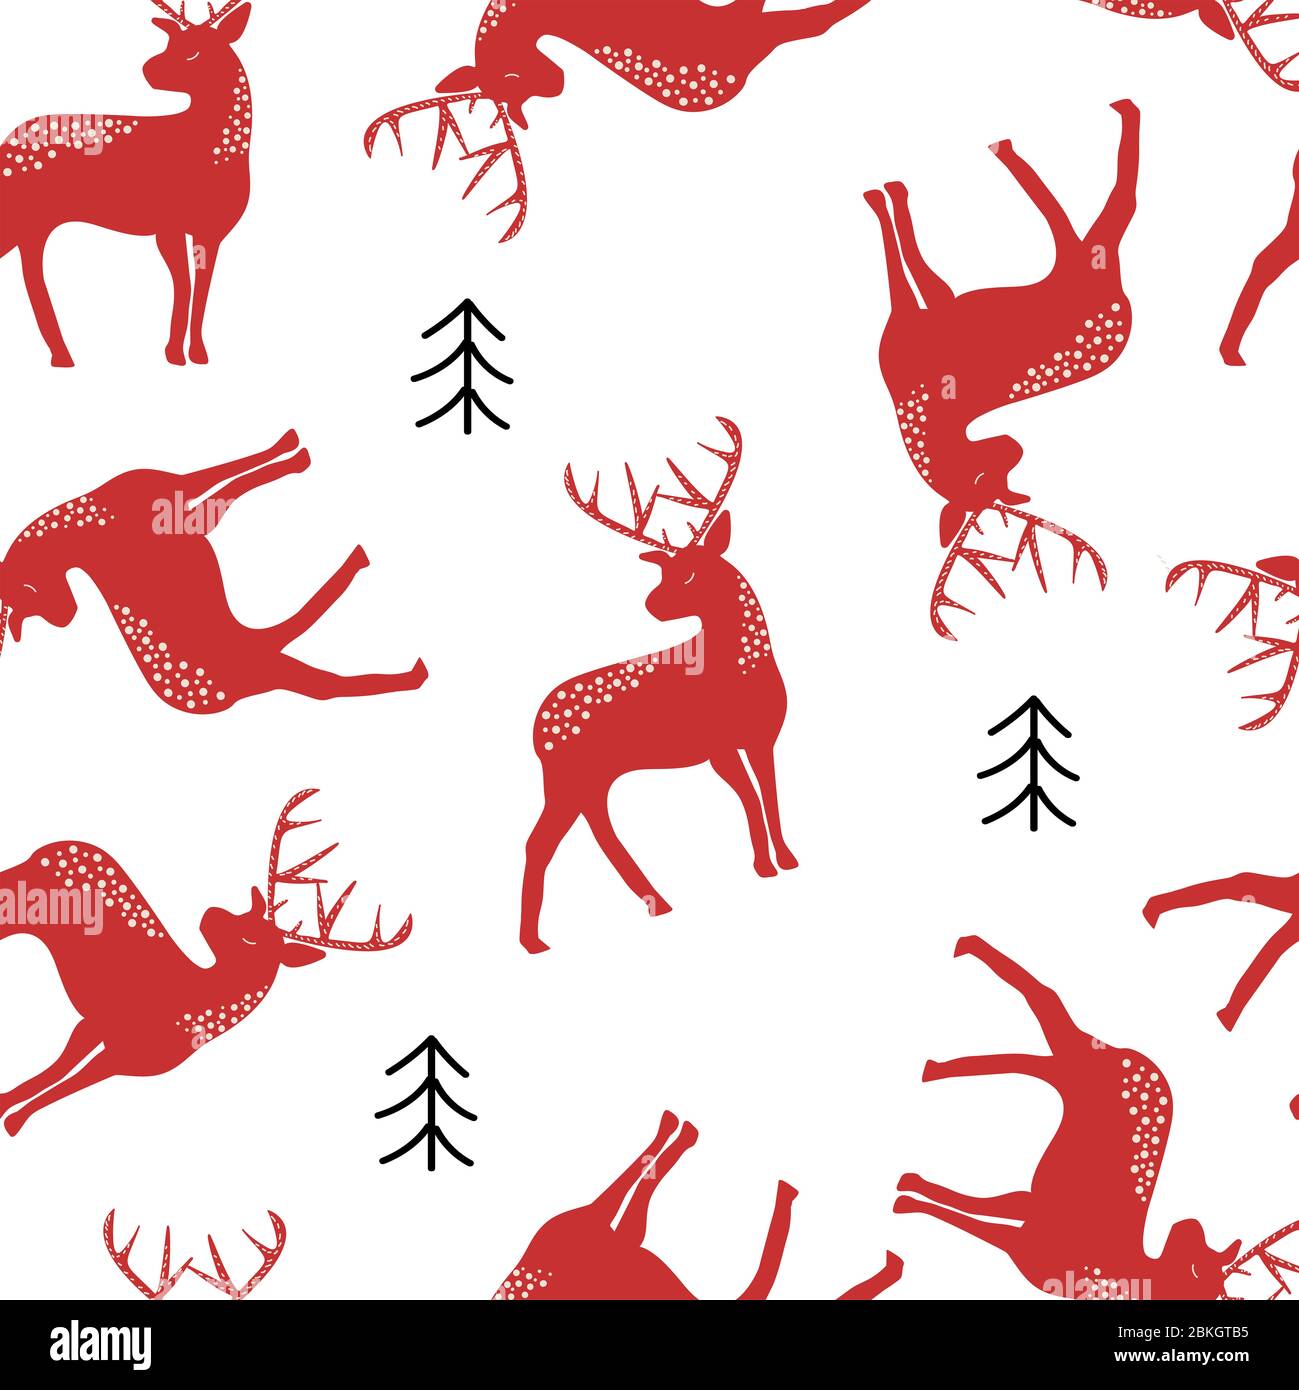 Diseño navideño sin costuras. Siluetas de ciervos rojos con símbolos de árbol negro en un patrón repetitivo sobre un fondo blanco. Adecuado para imprimir papel de embalaje Foto de stock